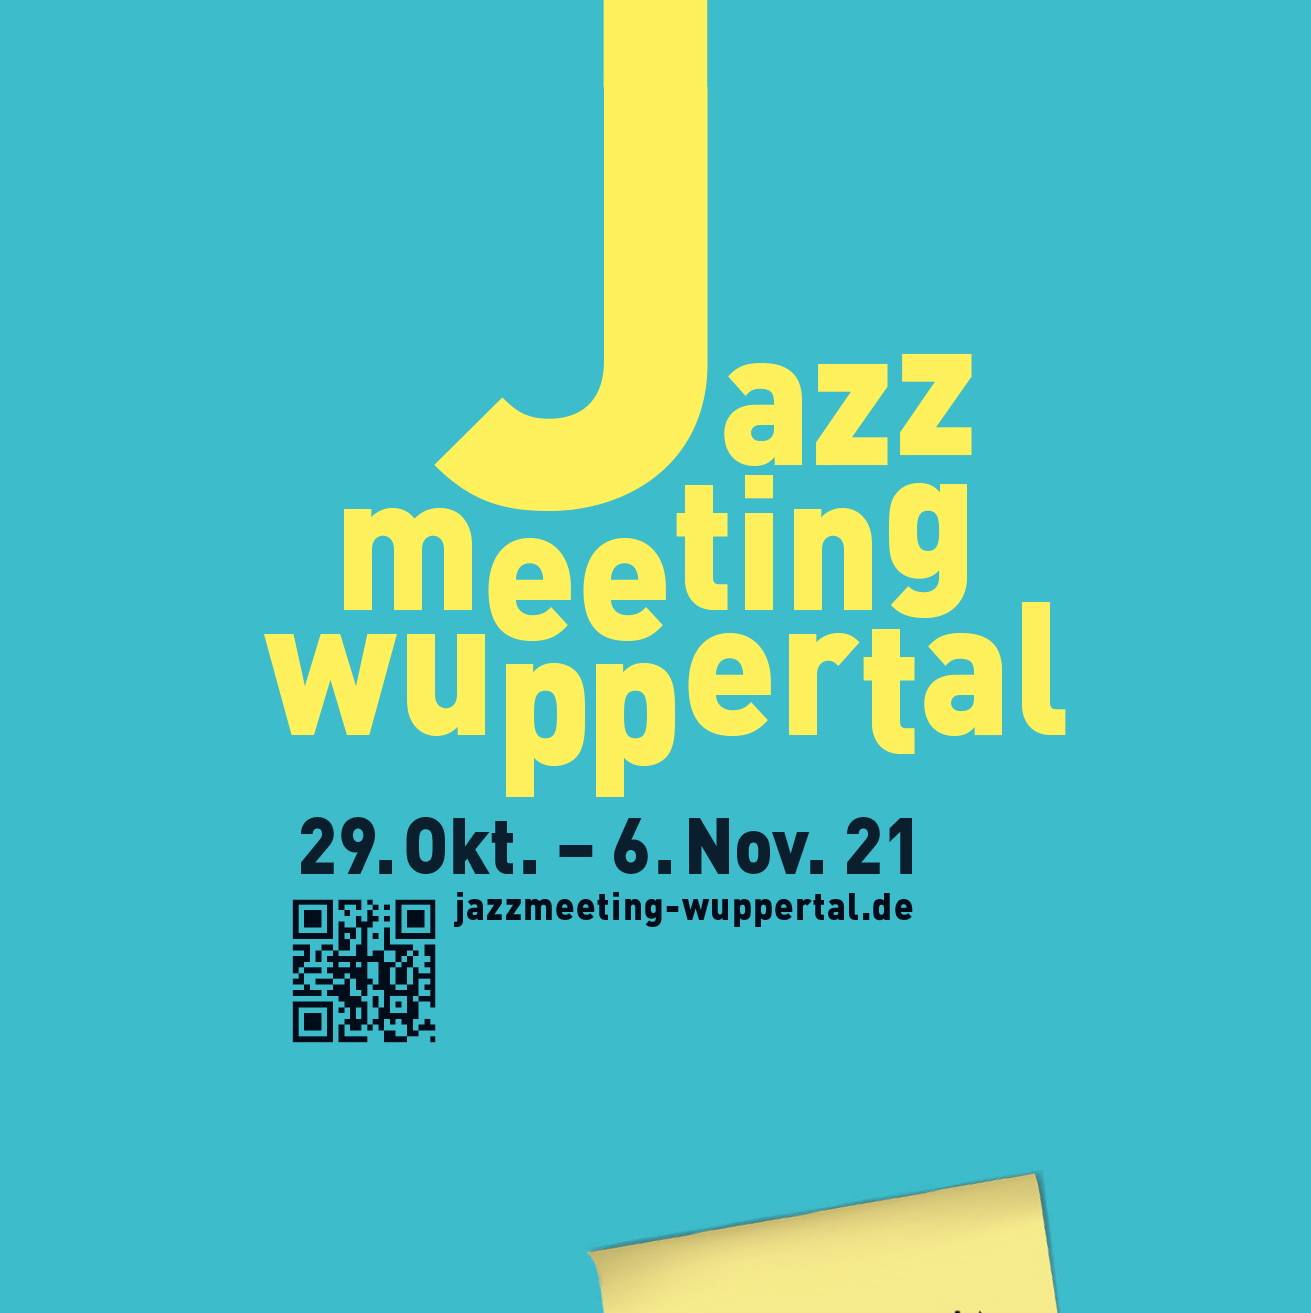 Das Jazzmeeting Wuppertal läuft vom 29.